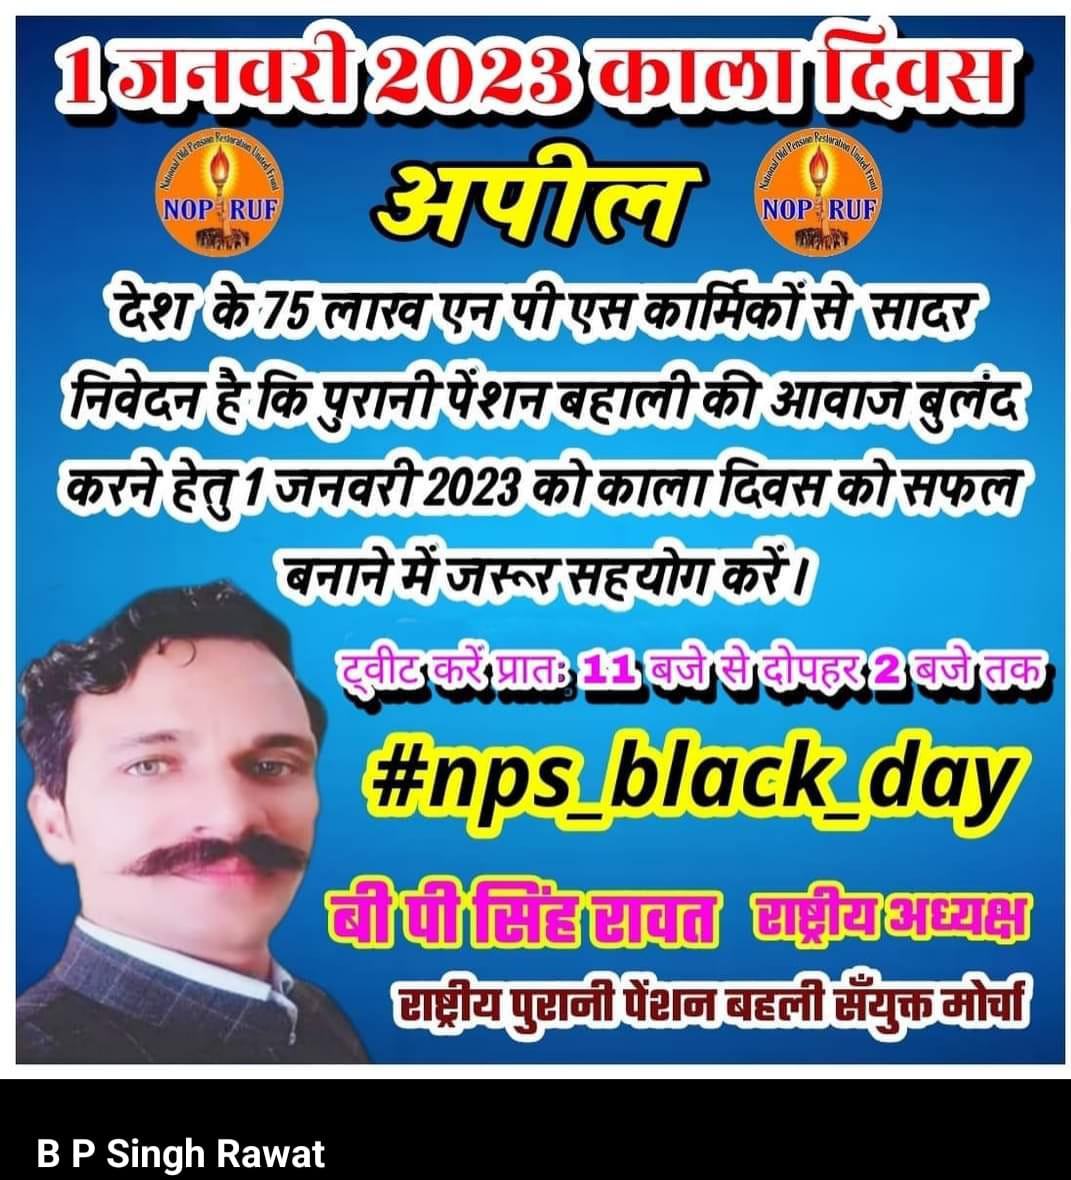 #NPS_Black_Day भले ही पूरे देश की जनता के लिए आज नव वर्ष का दिन हो लेकिन देश के एनपीएस कार्मिकों के लिए 1 जनवरी काला दिन है @bprawatNOPRUF @narendramodi @RahulGandhi @priyankagandhi @ashokgehlot51 @myogiadityanath @PTI_News